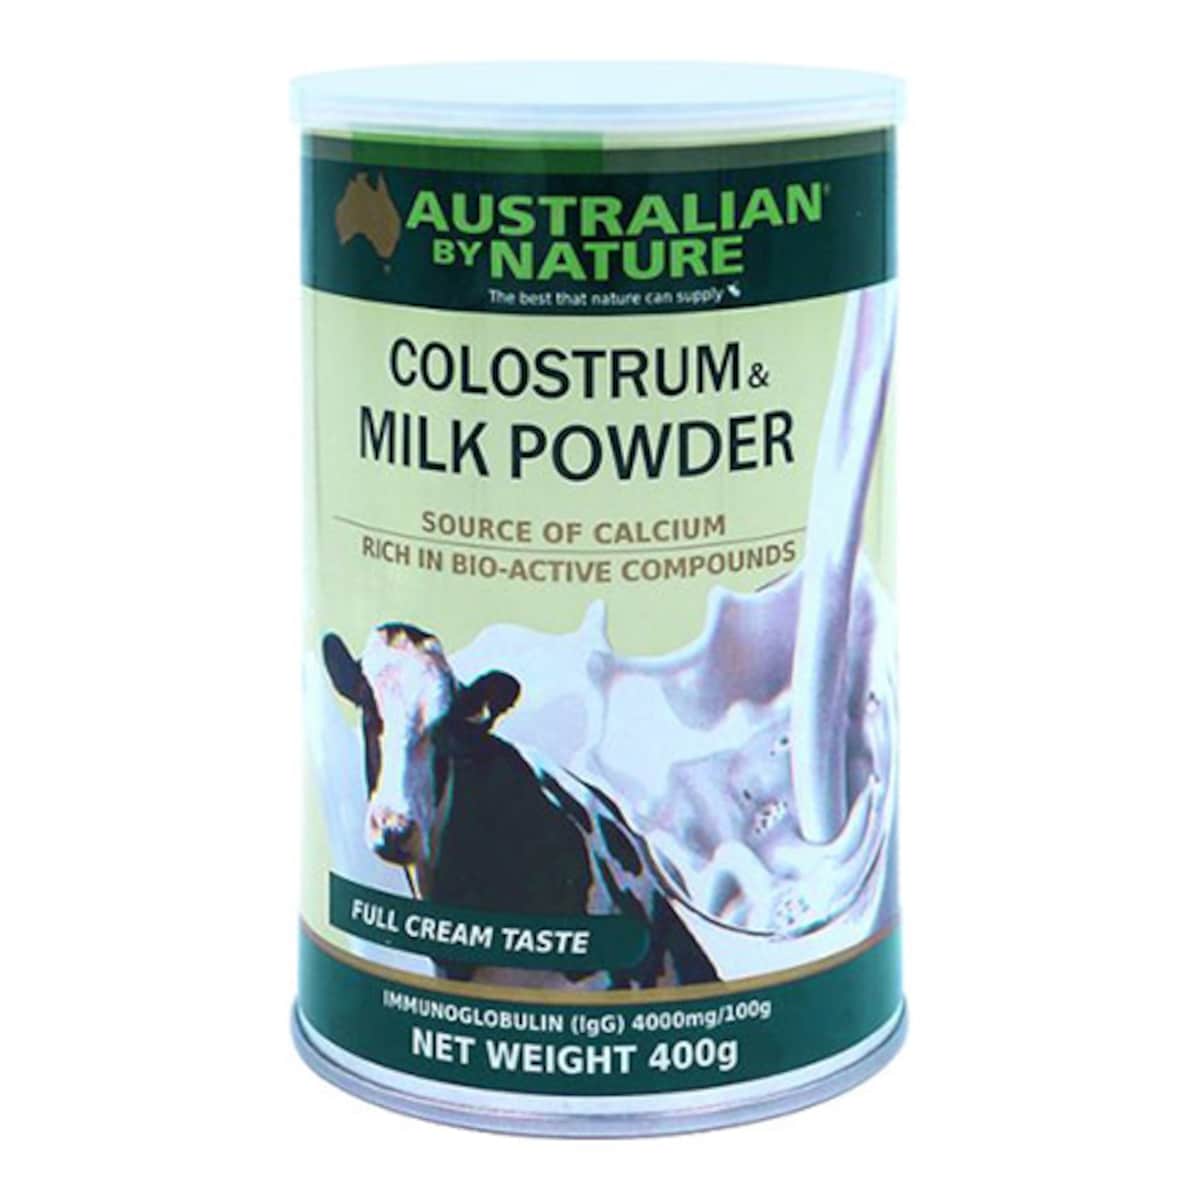 Australian by Nature Colostrum & Milk Powder 400g